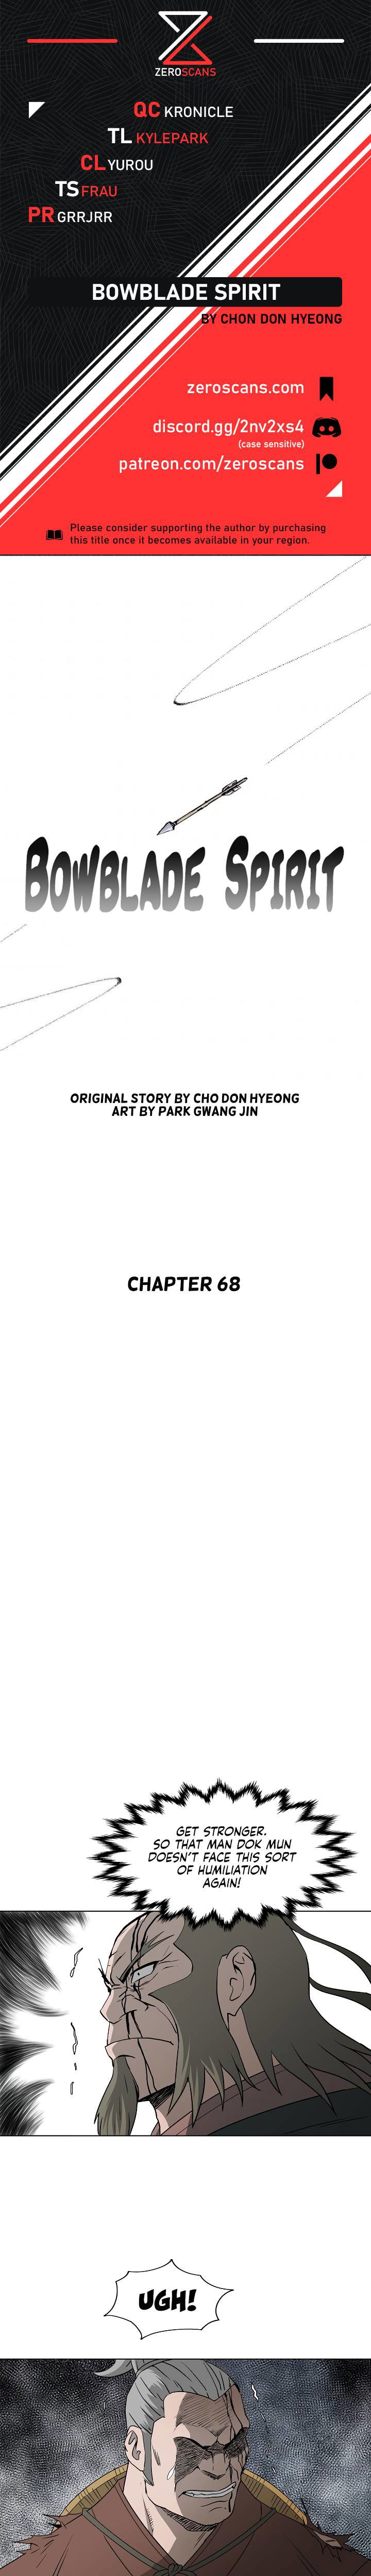 Bowblade Spirit Chapter 68 page 1